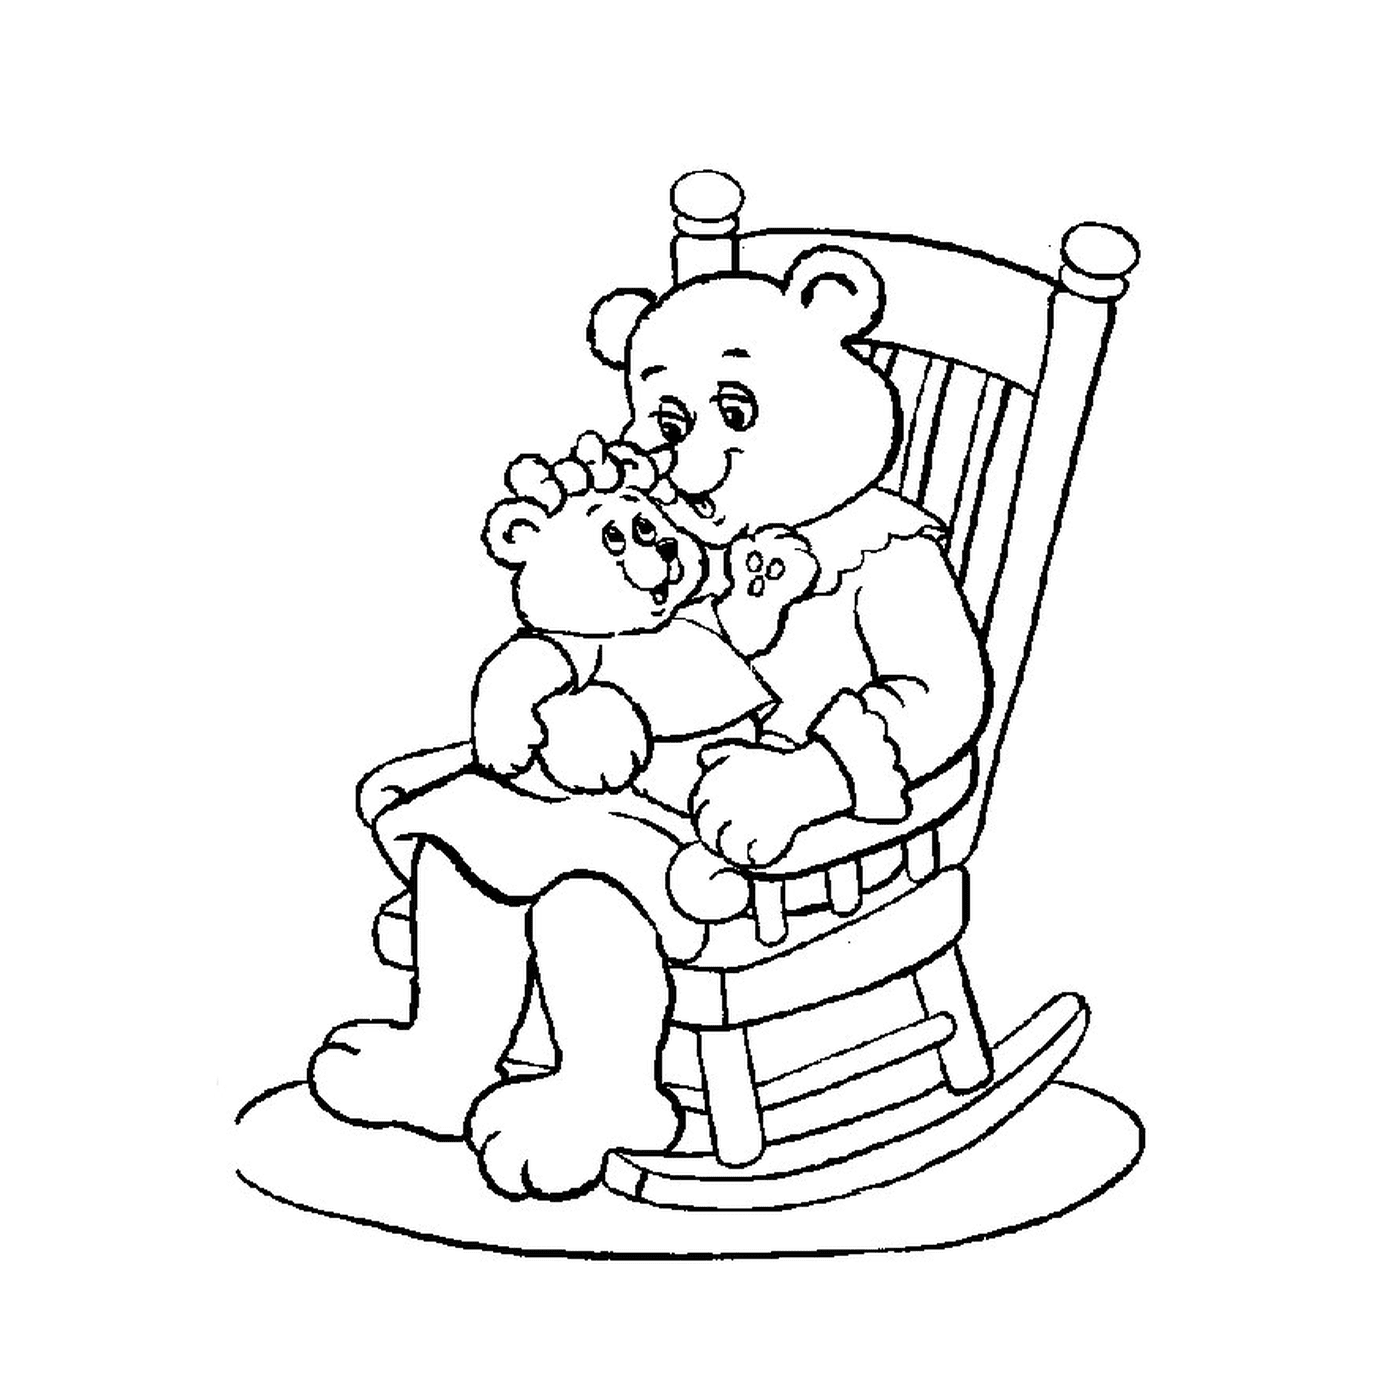  Медведь сидит на кресле-качалке с медведем 